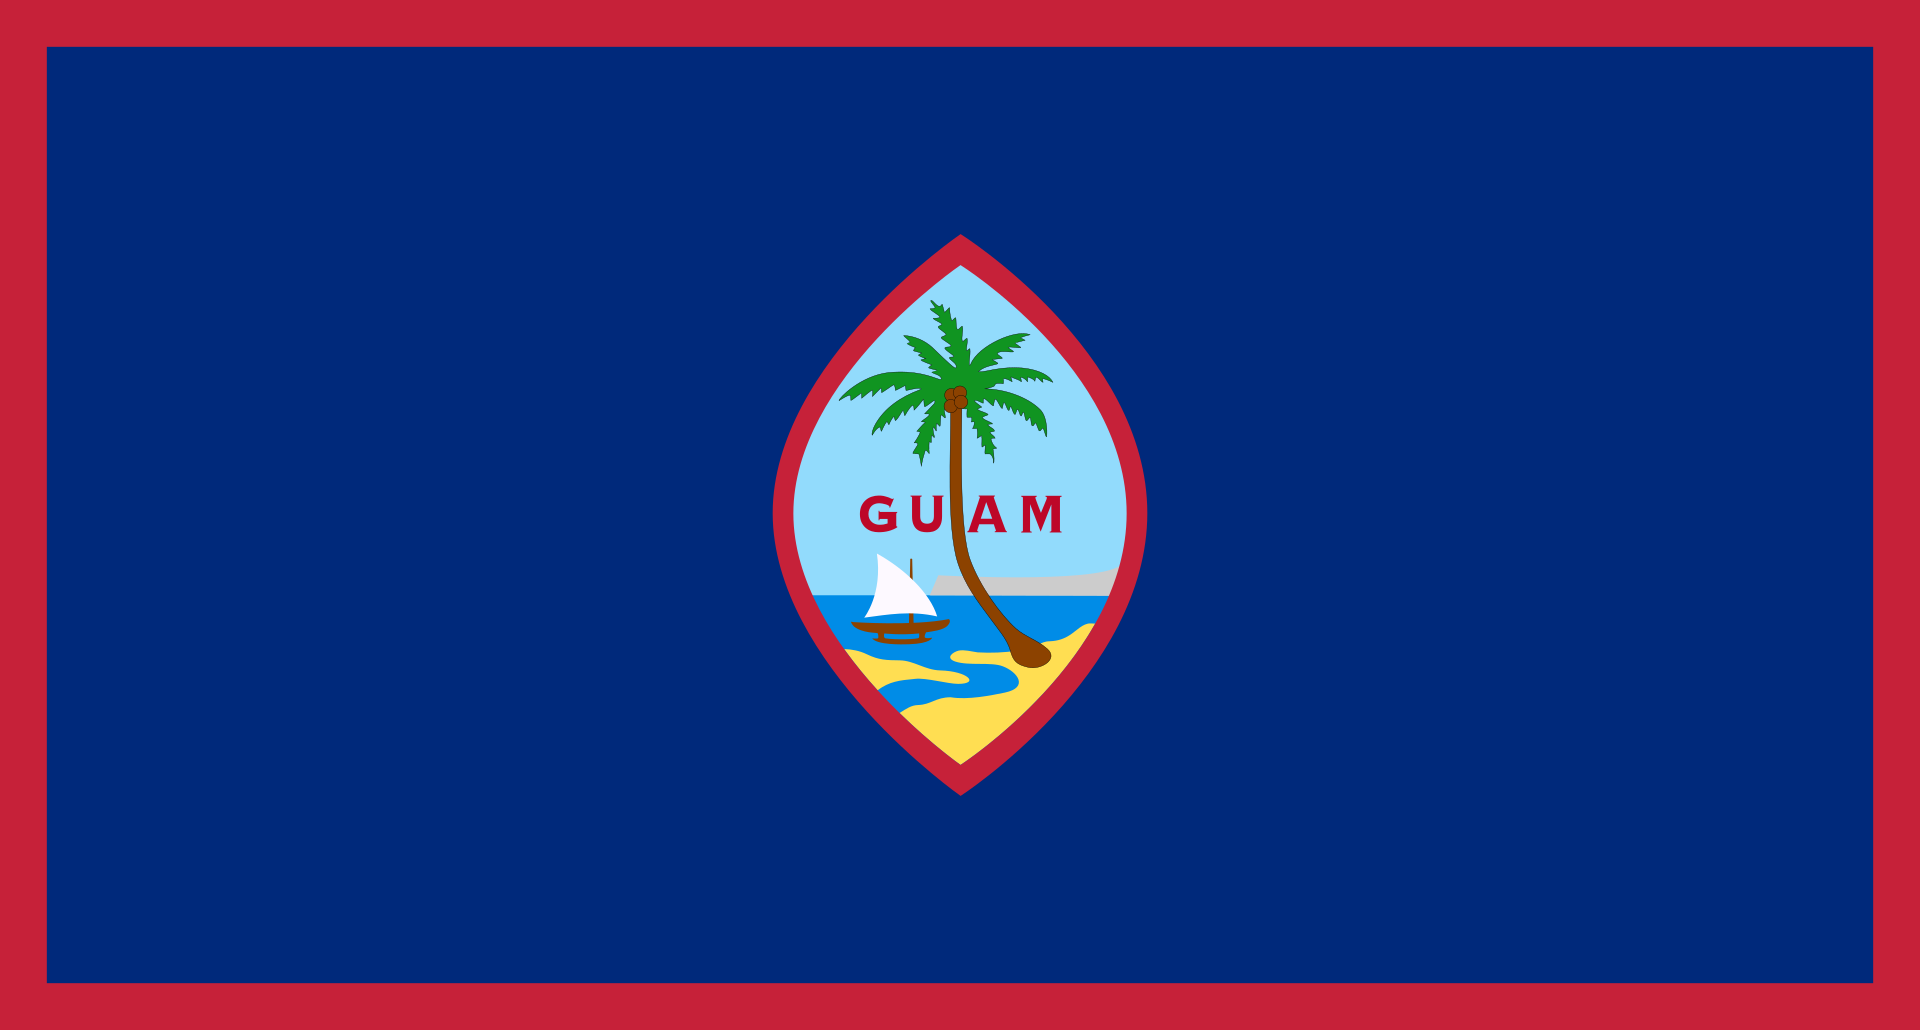 США - Гуам - Марианские острова